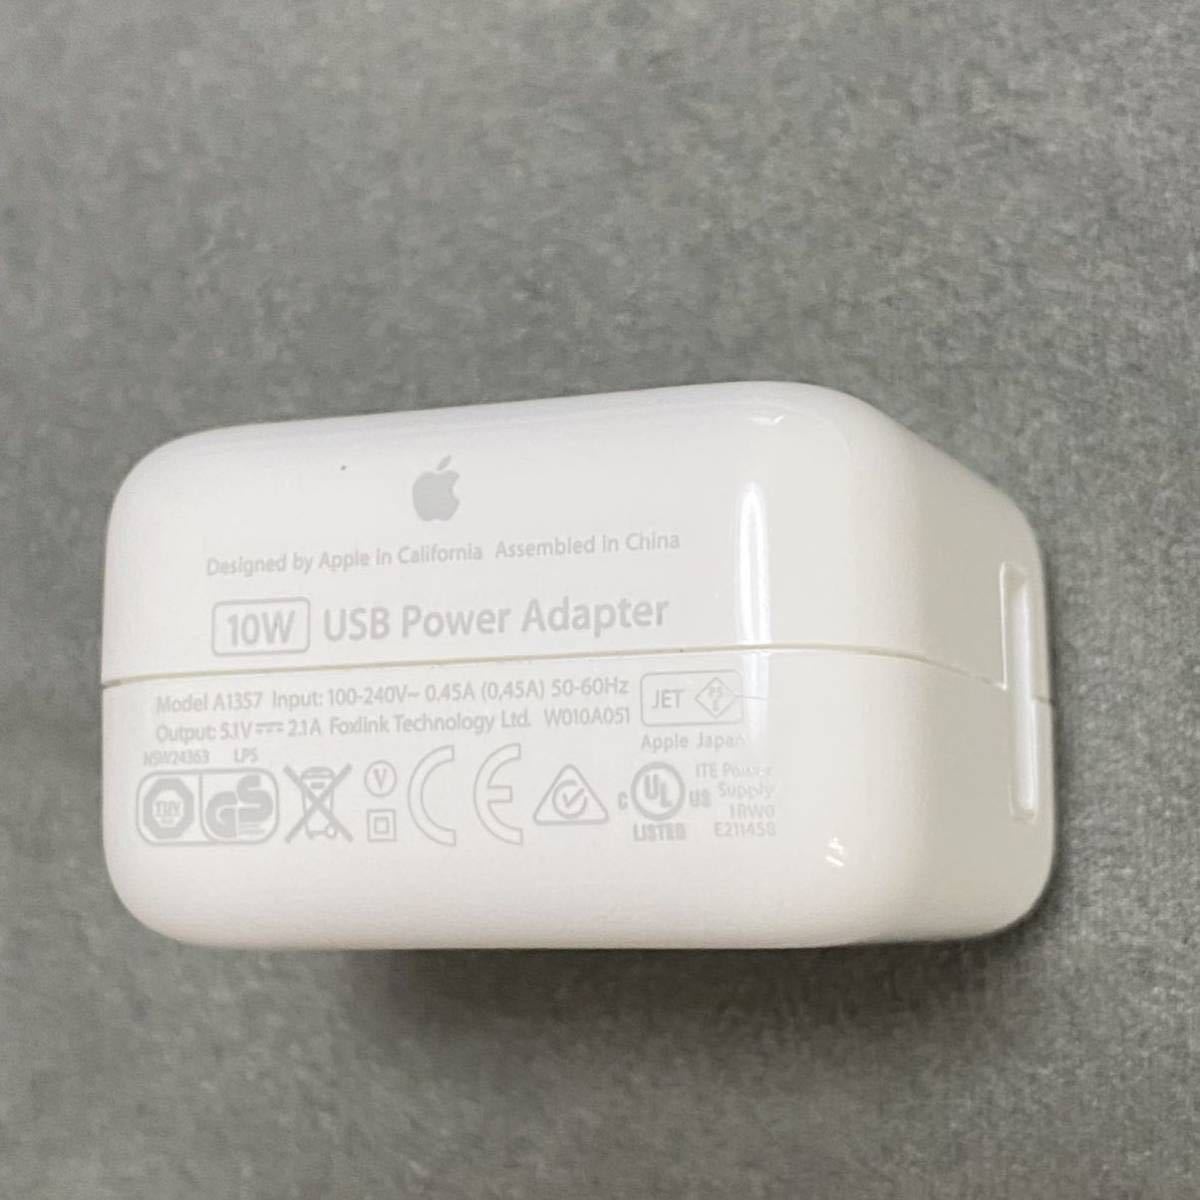 Apple 純正ACアダプタ10W USB 電源アダプタA1357 iPad iPhone POWER